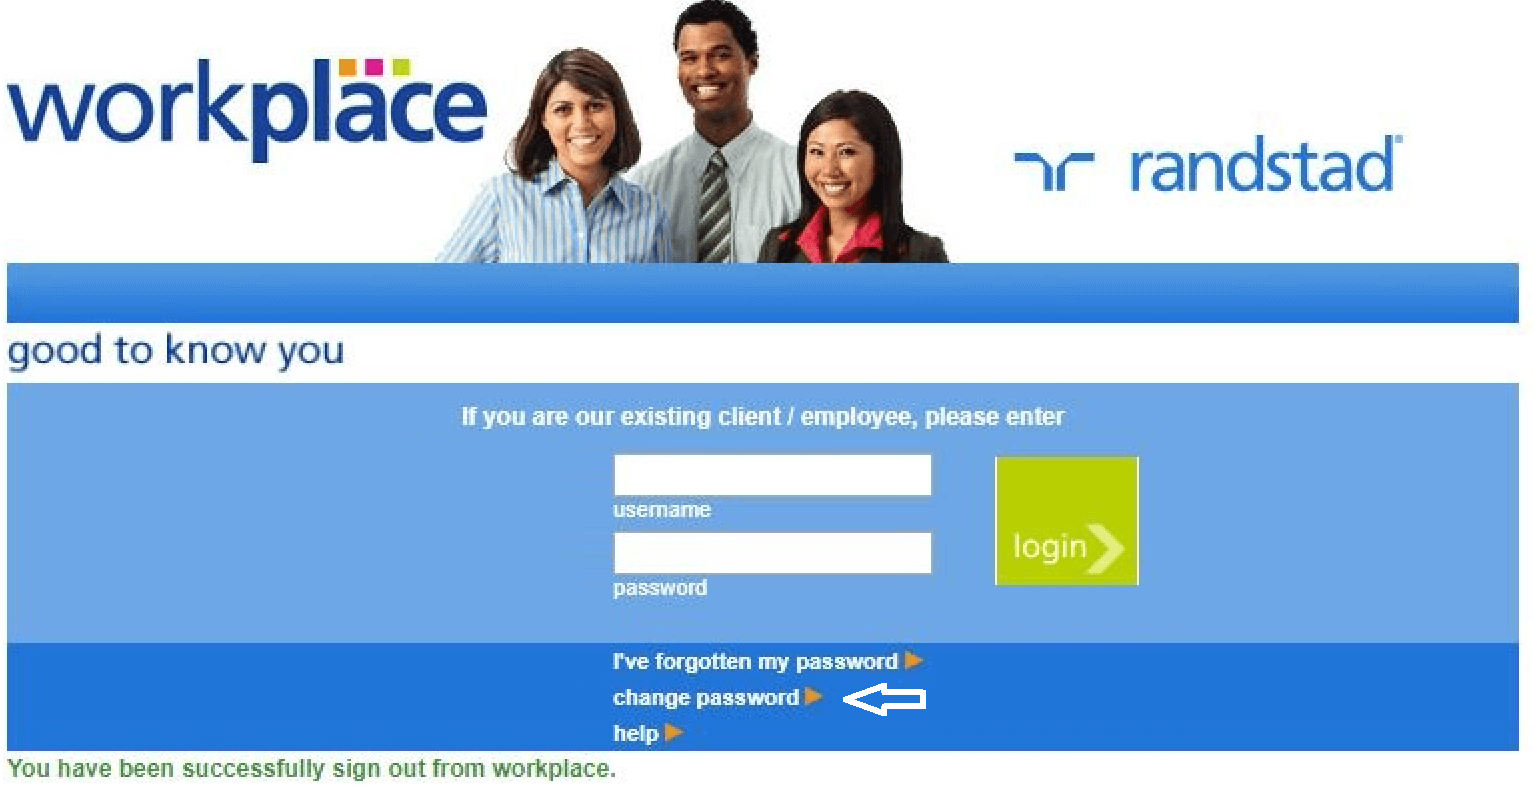 change randstad workplace password